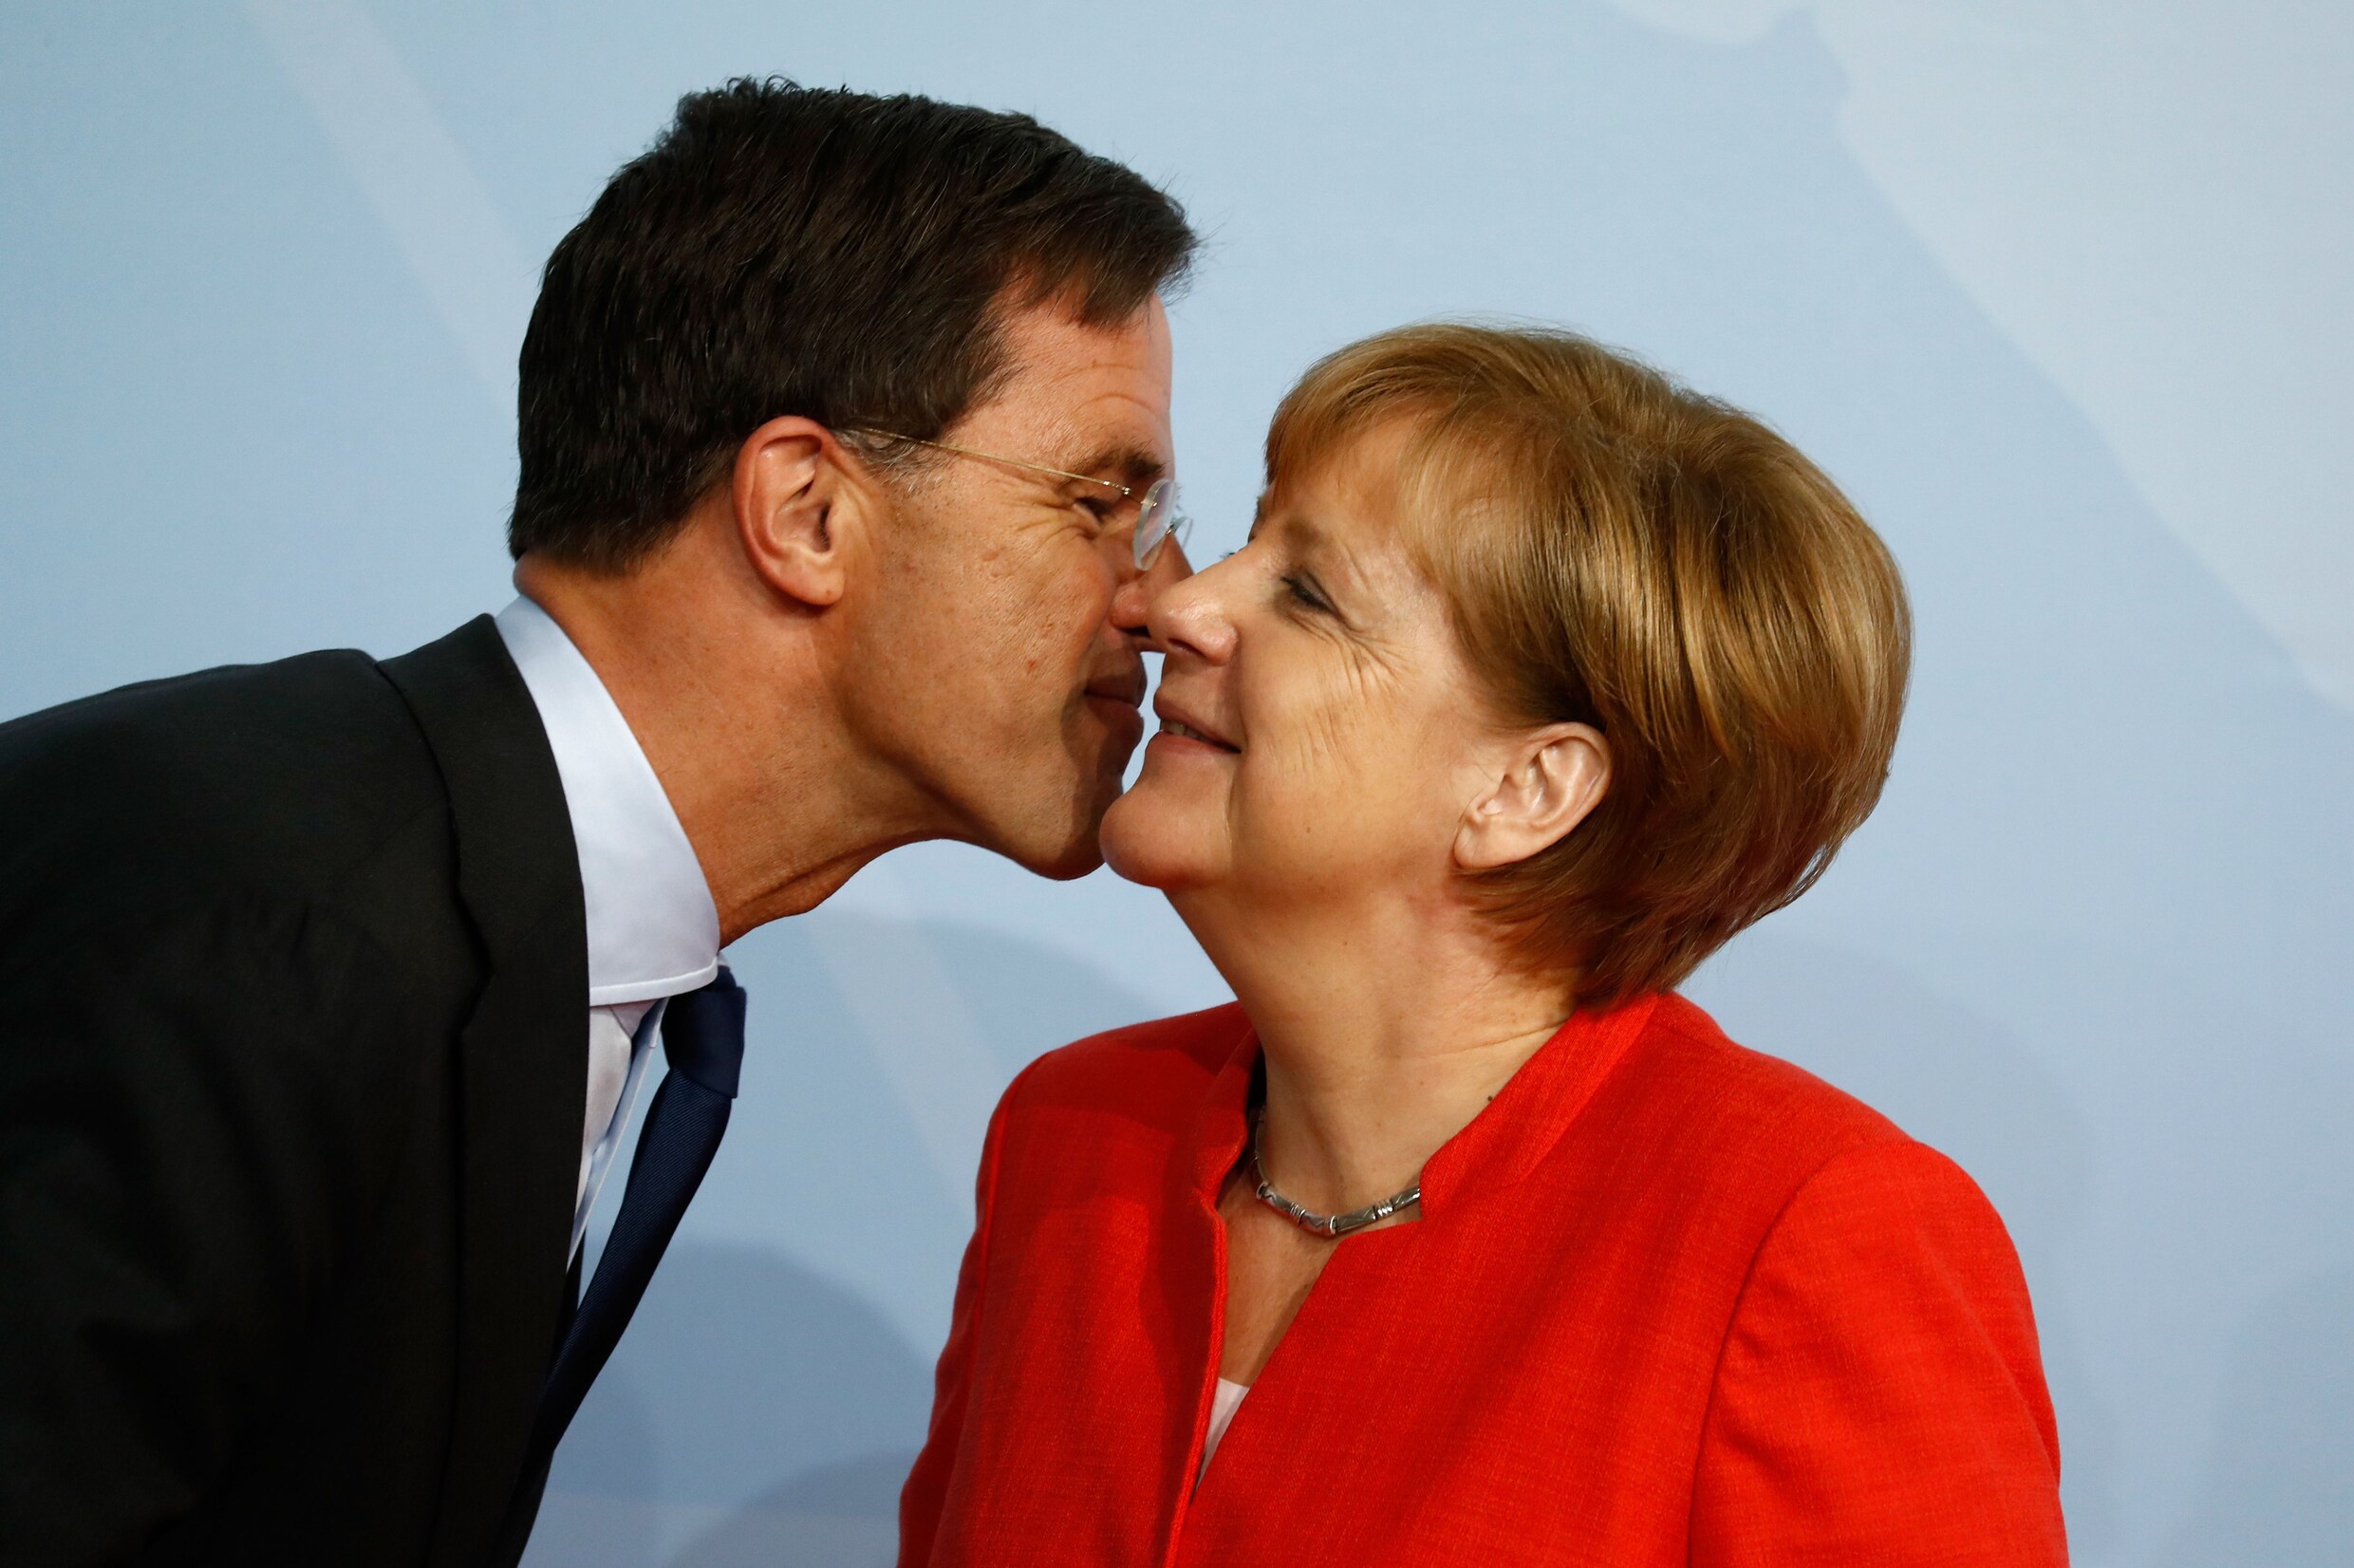 Politiek Europa beziet keizerin Merkel met een mengeling van wantrouwen en hoop